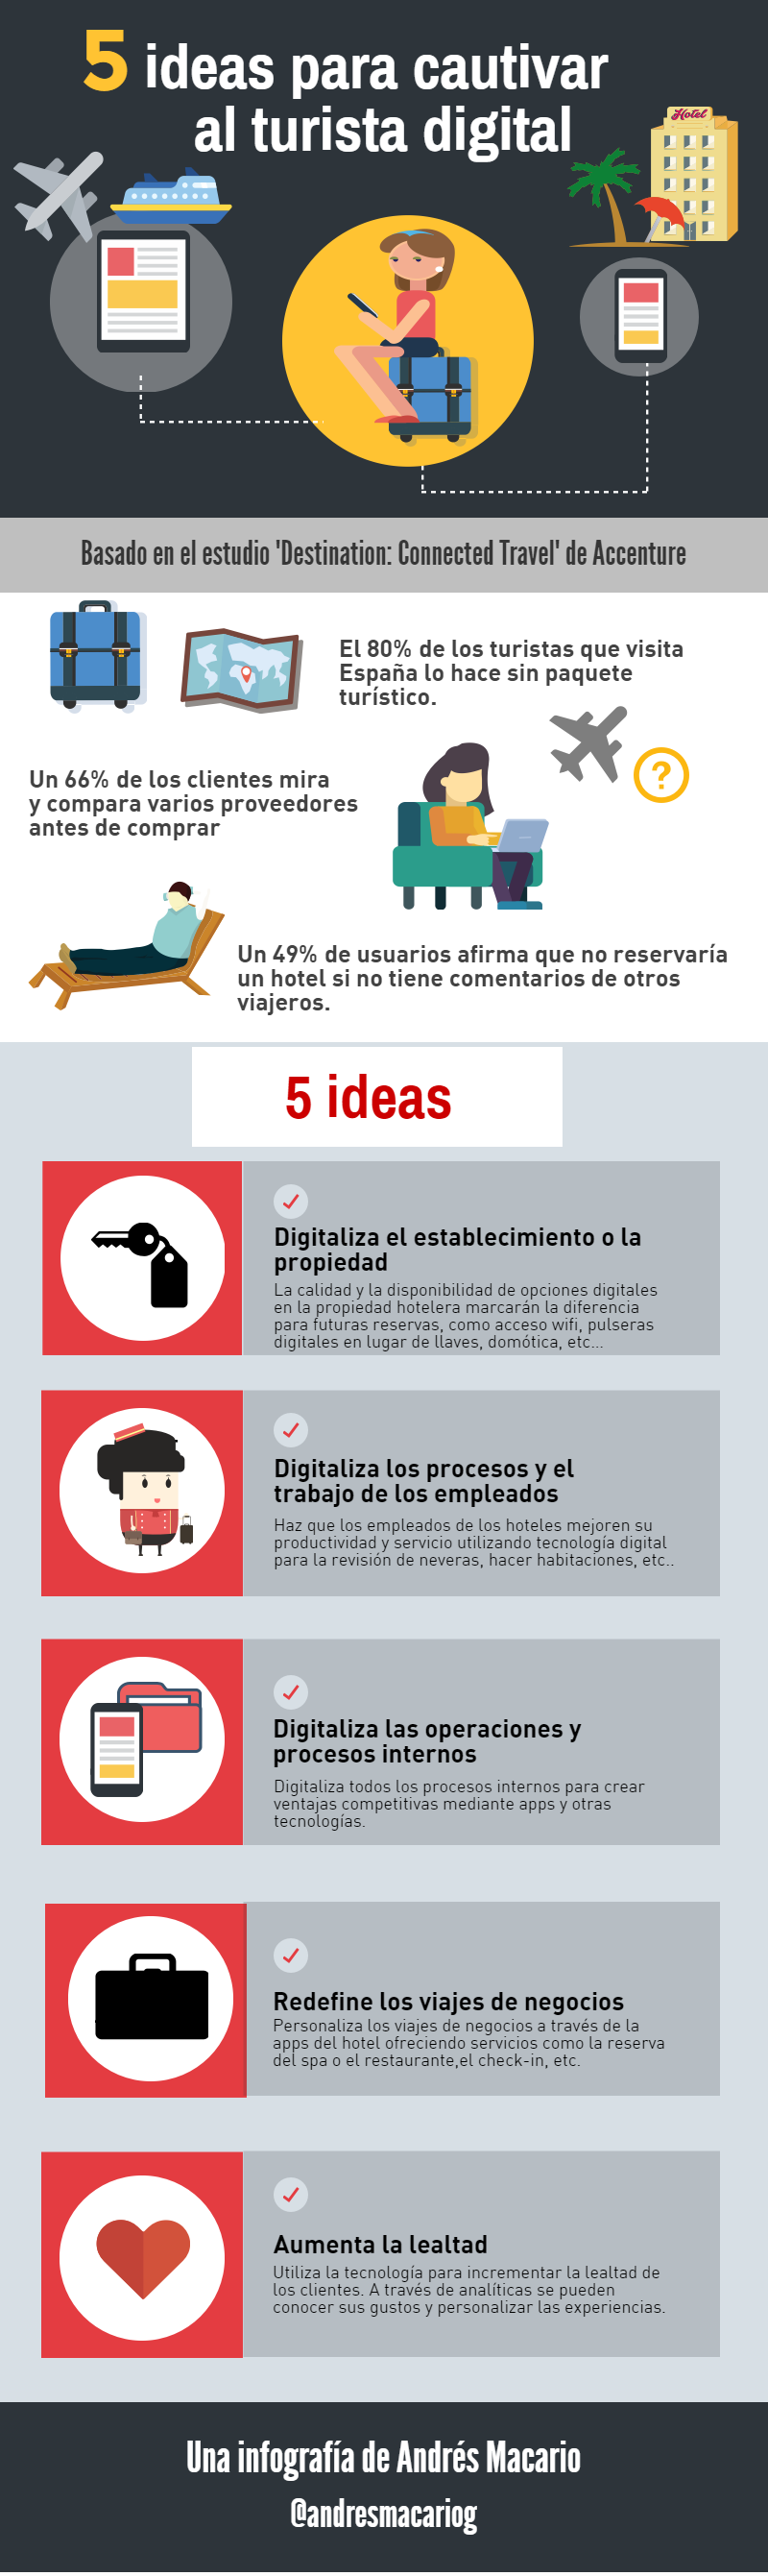 5 ideas para cautivar al turista digital Infografia Andres Macario